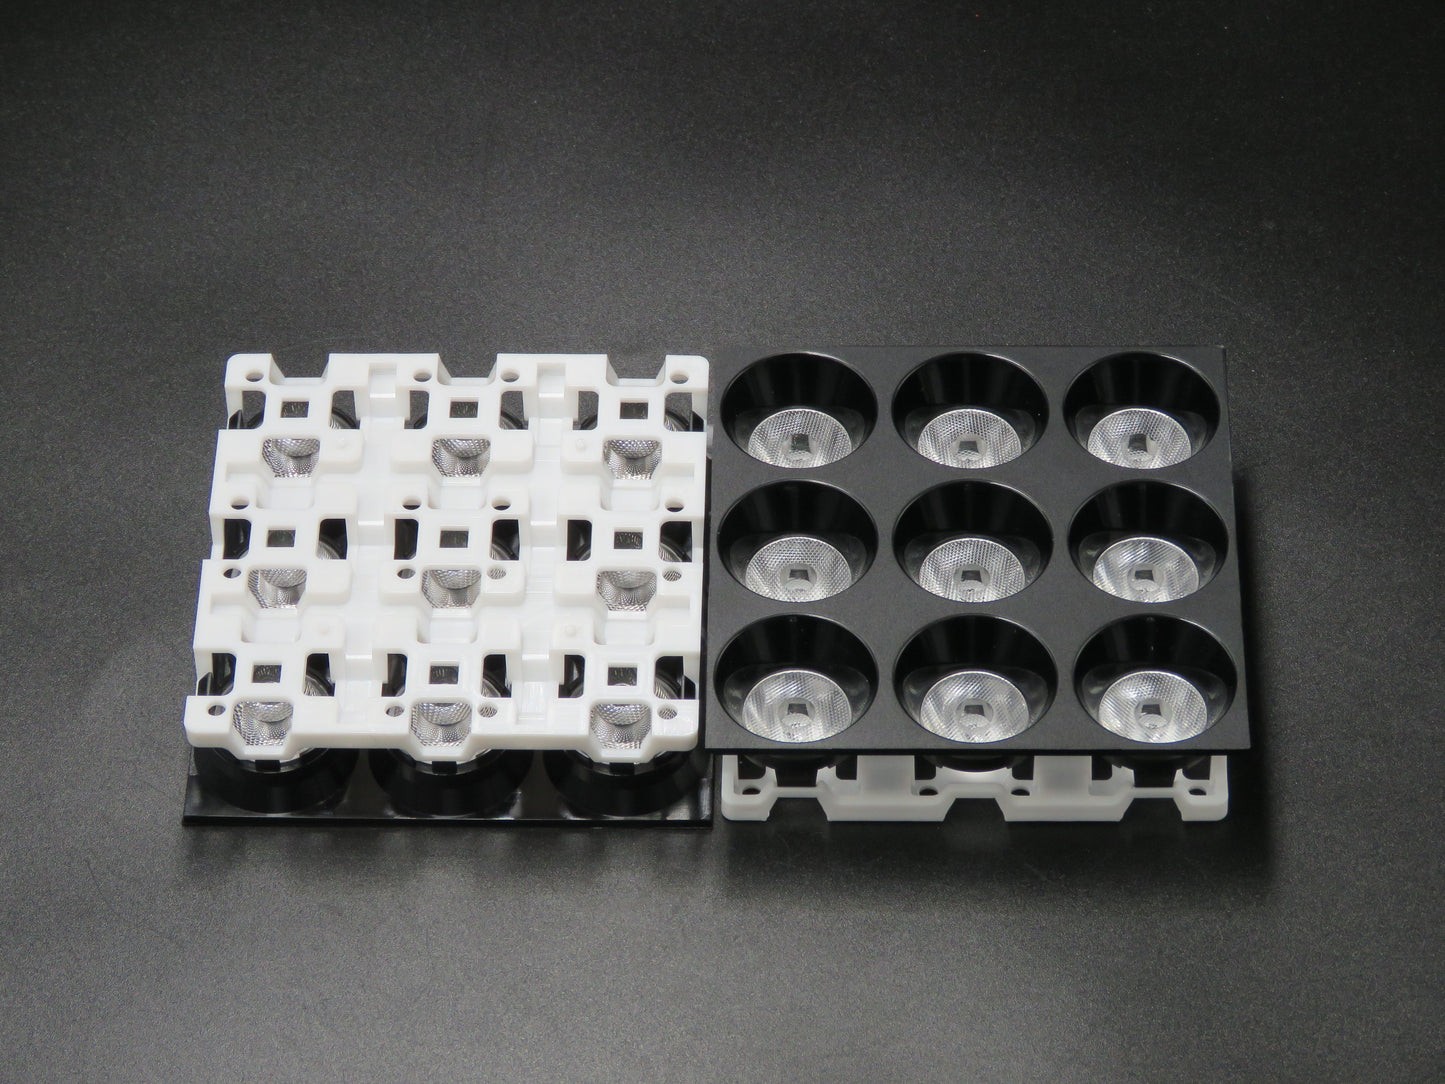 Osvětlovací čočka s magnetickým pásem 9 v 1 90 mm 24stupňová čočka Výroba čočky (4)